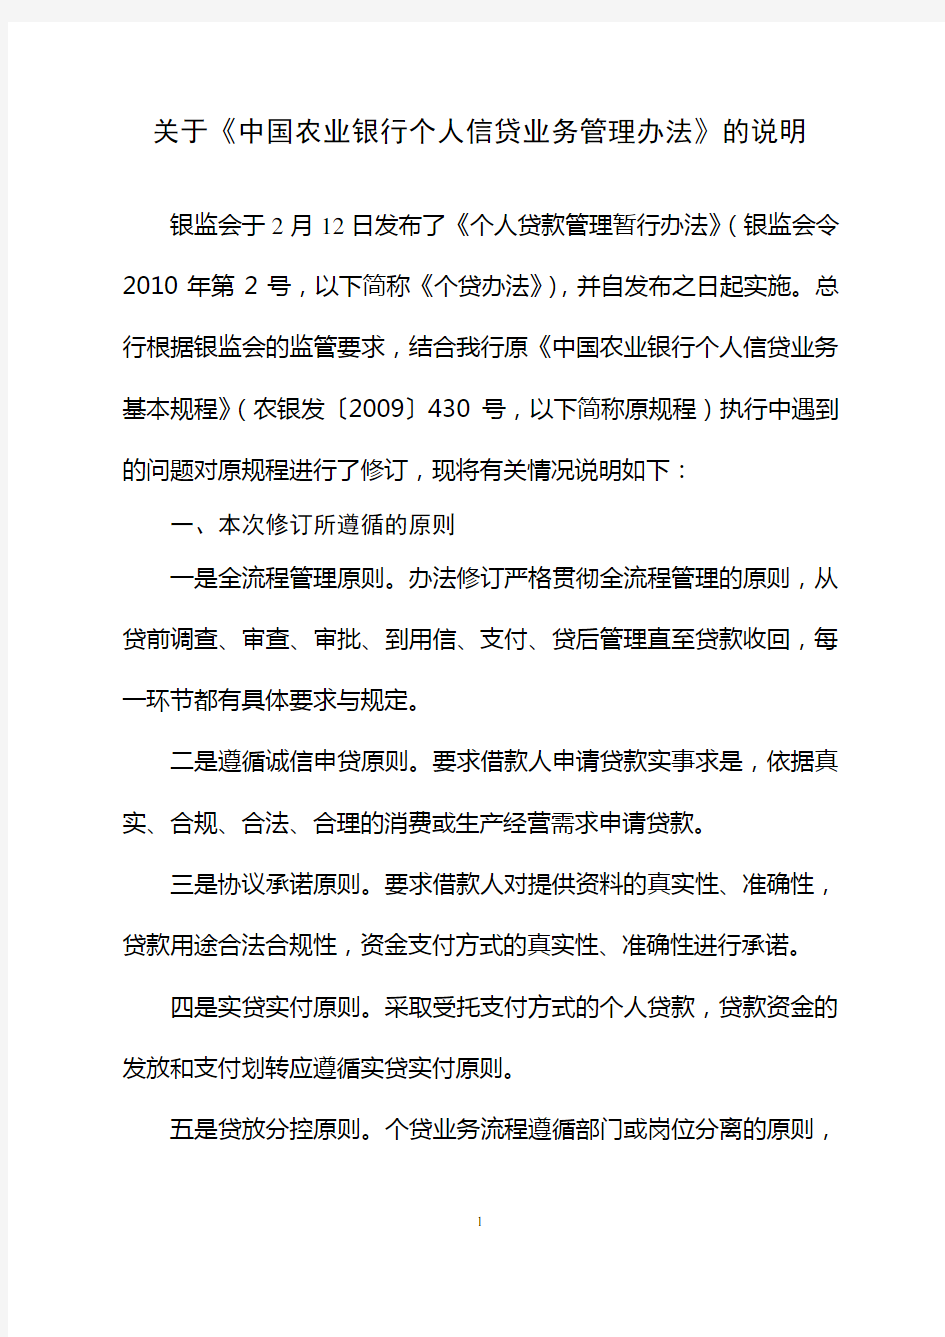 关于《中国农业银行个人信贷业务管理办法》的说明